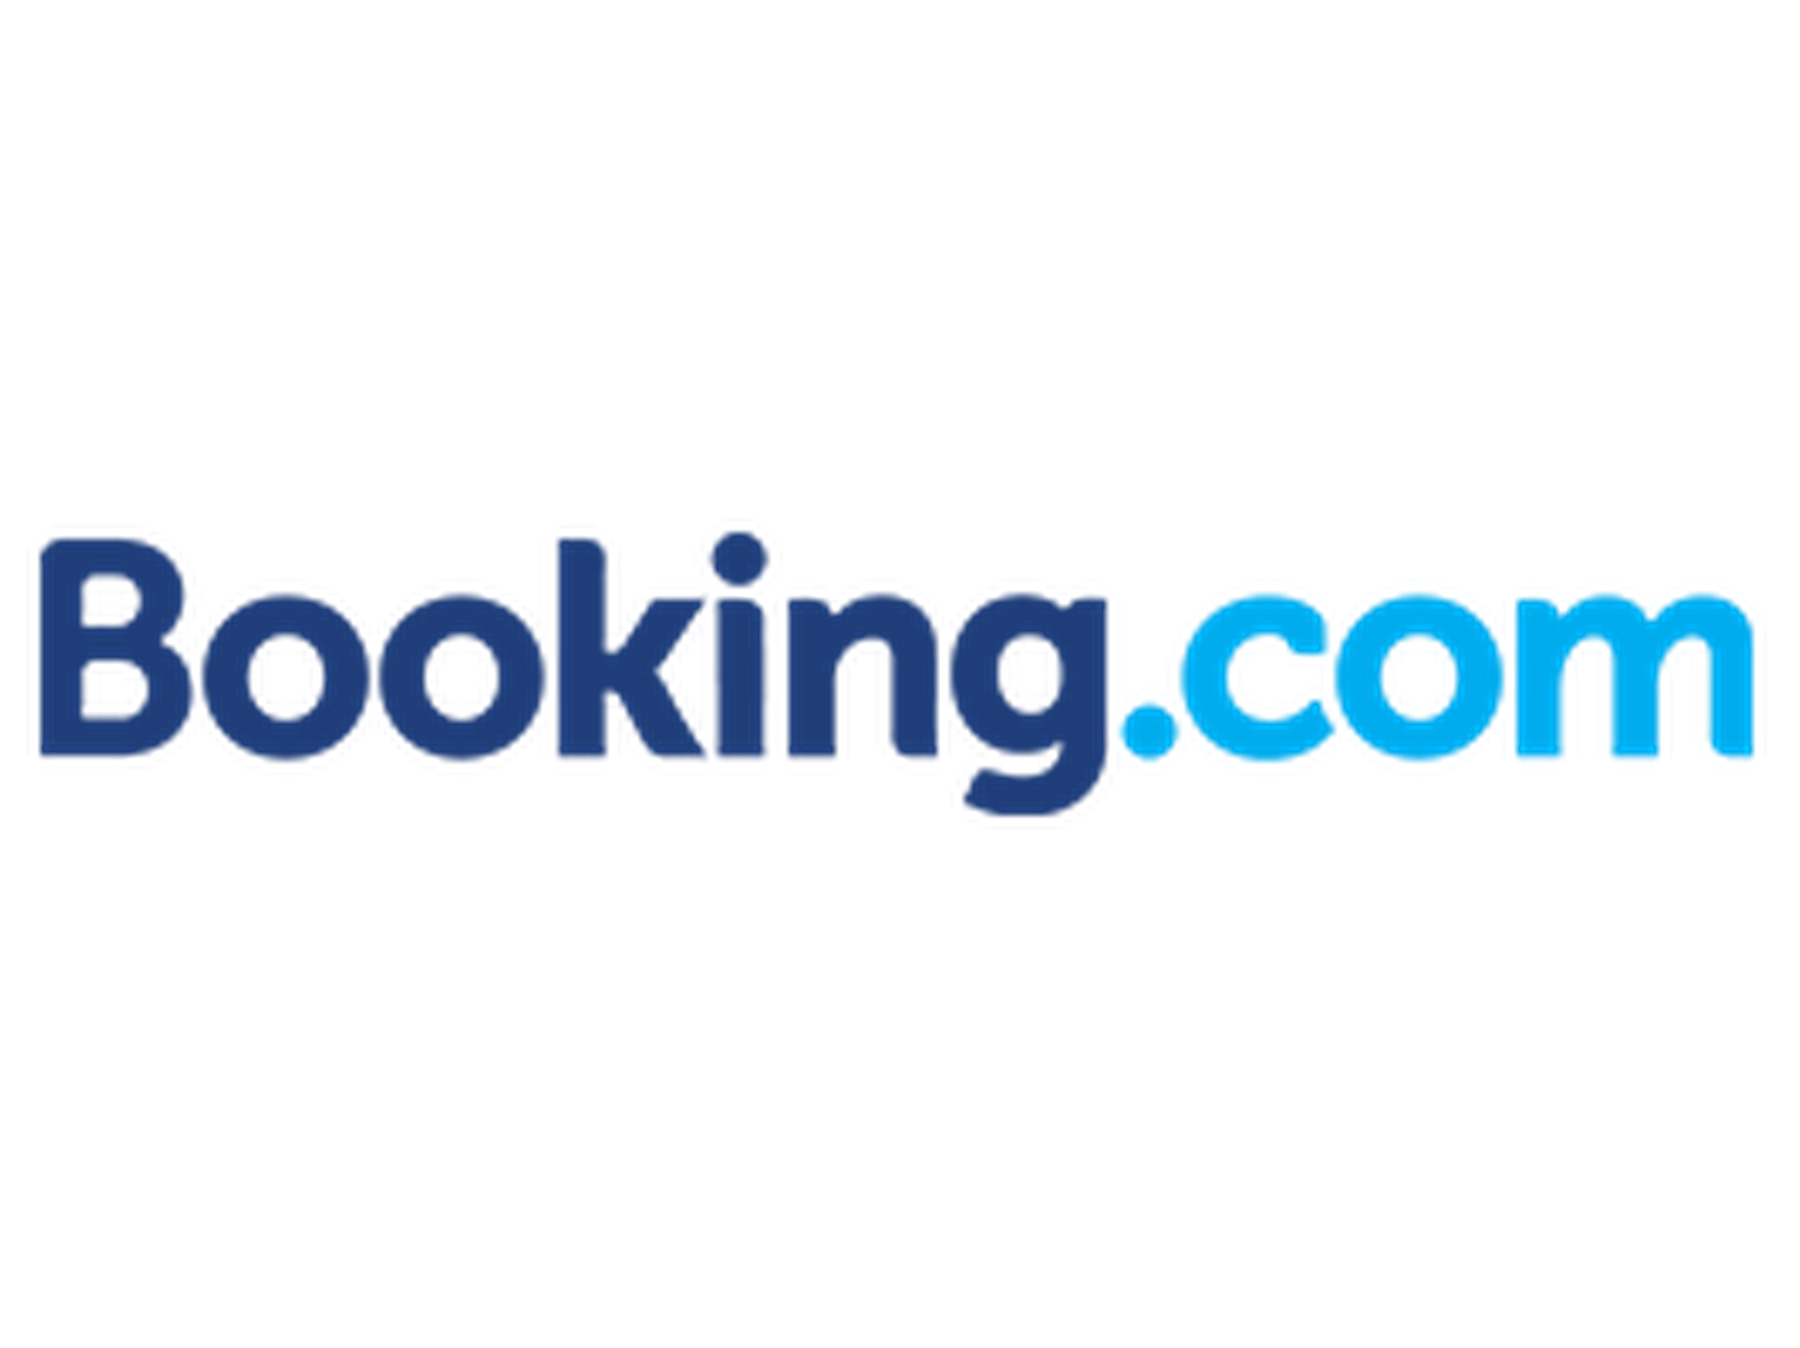 Booking.com Promo Code